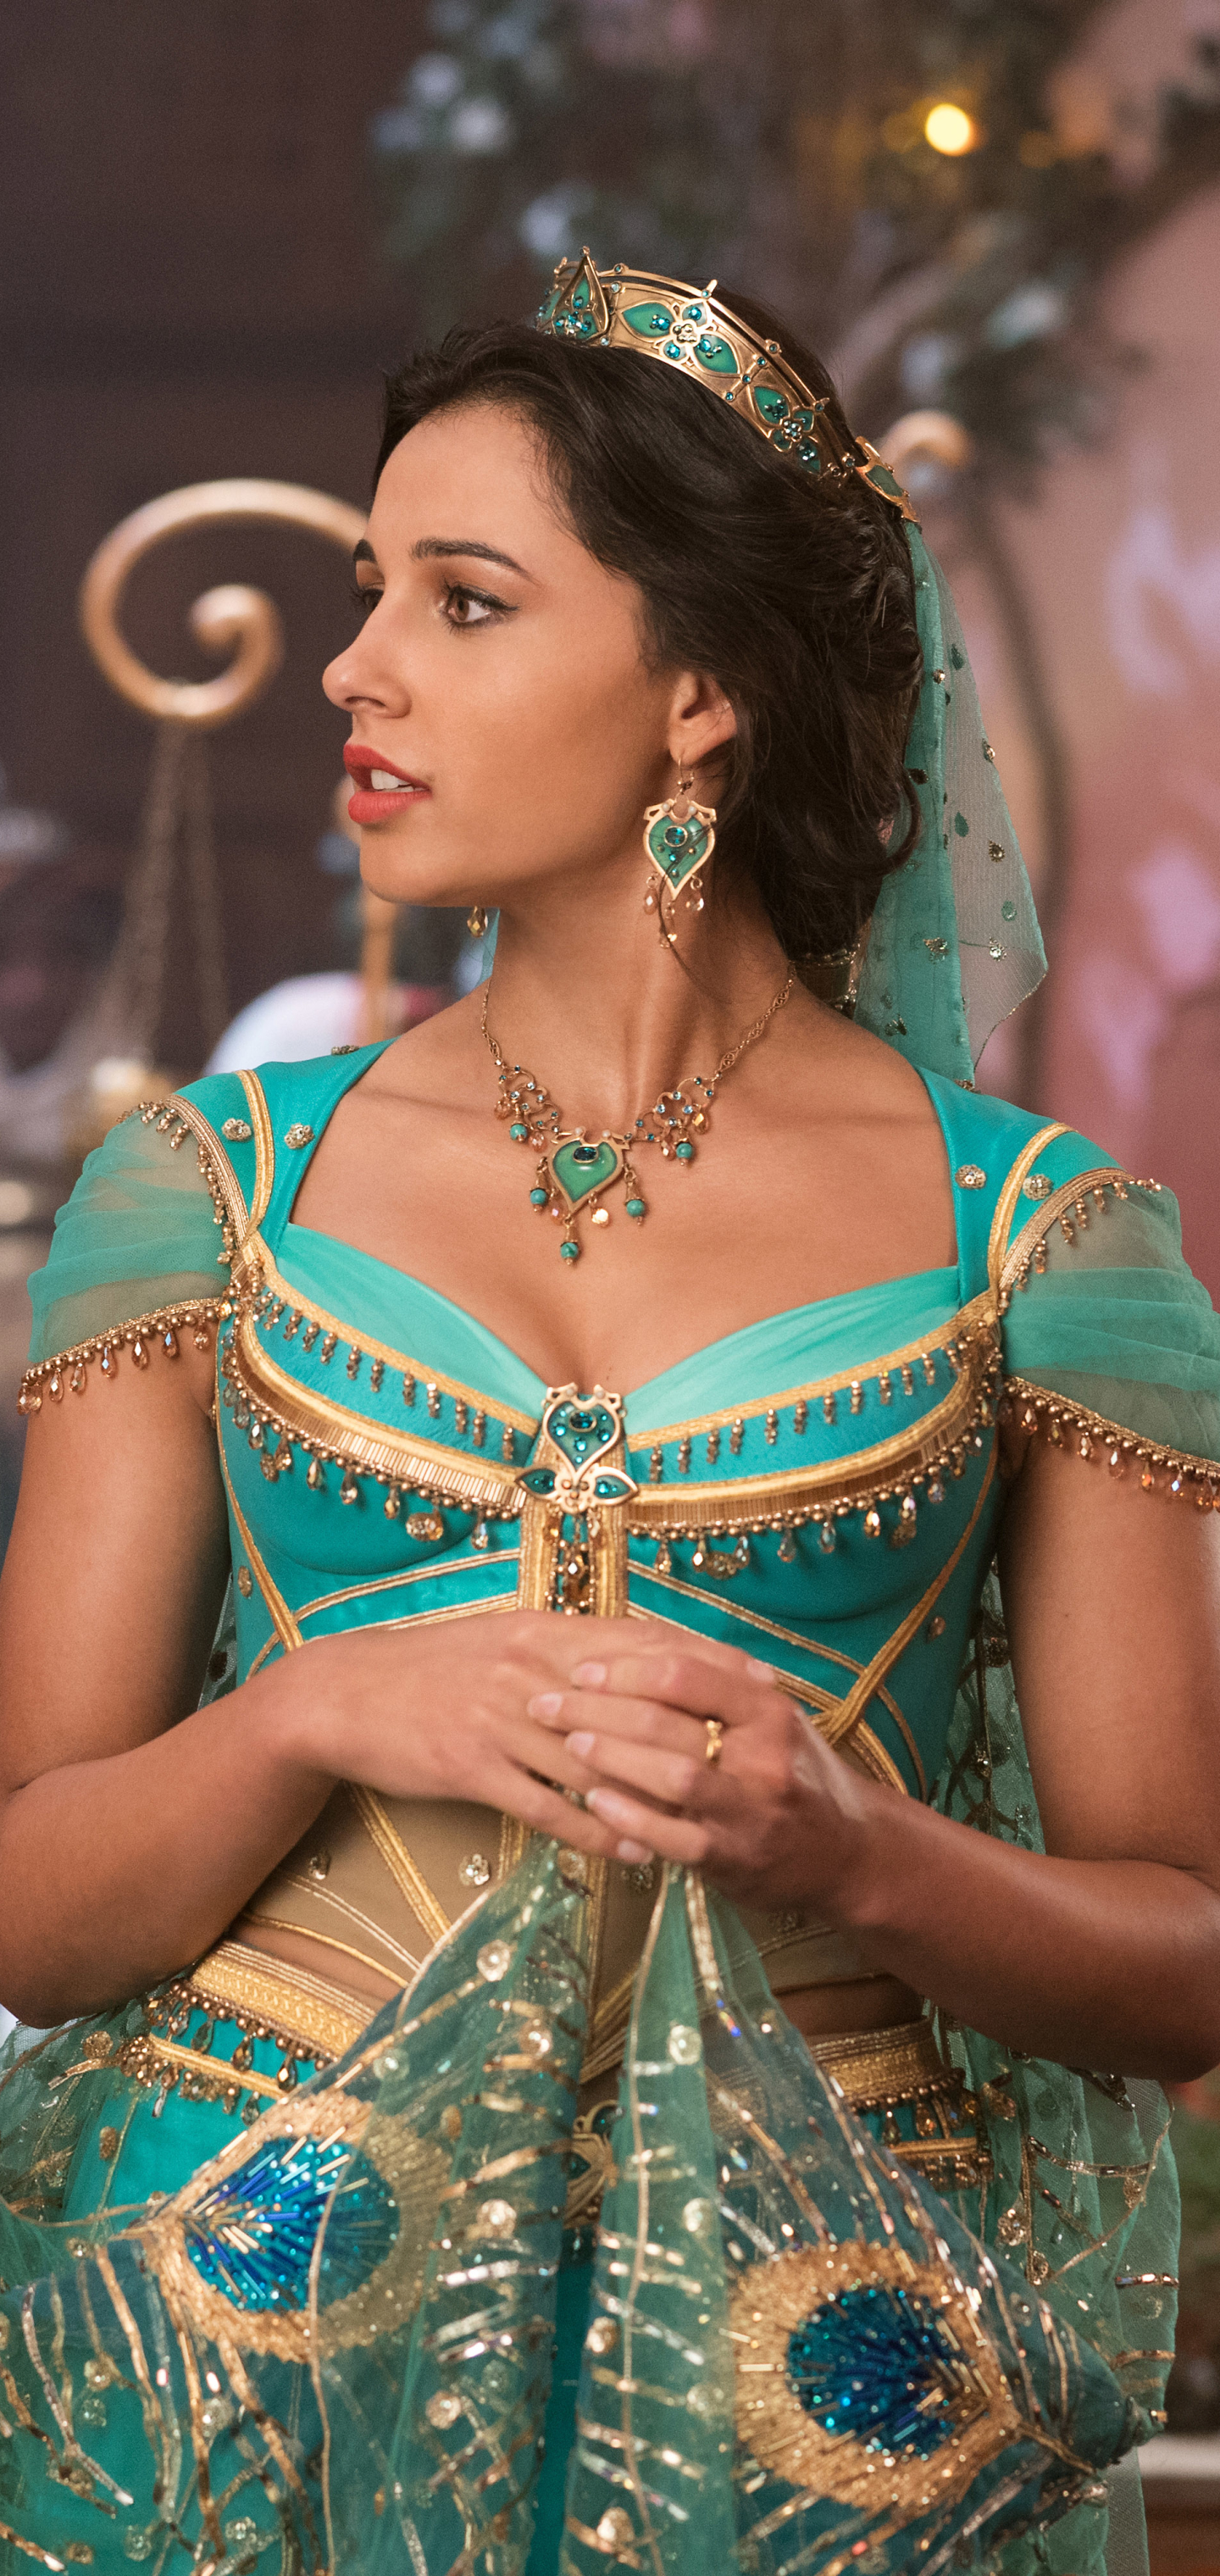 naomi scott, princess jasmine, movie, aladdin (2019)